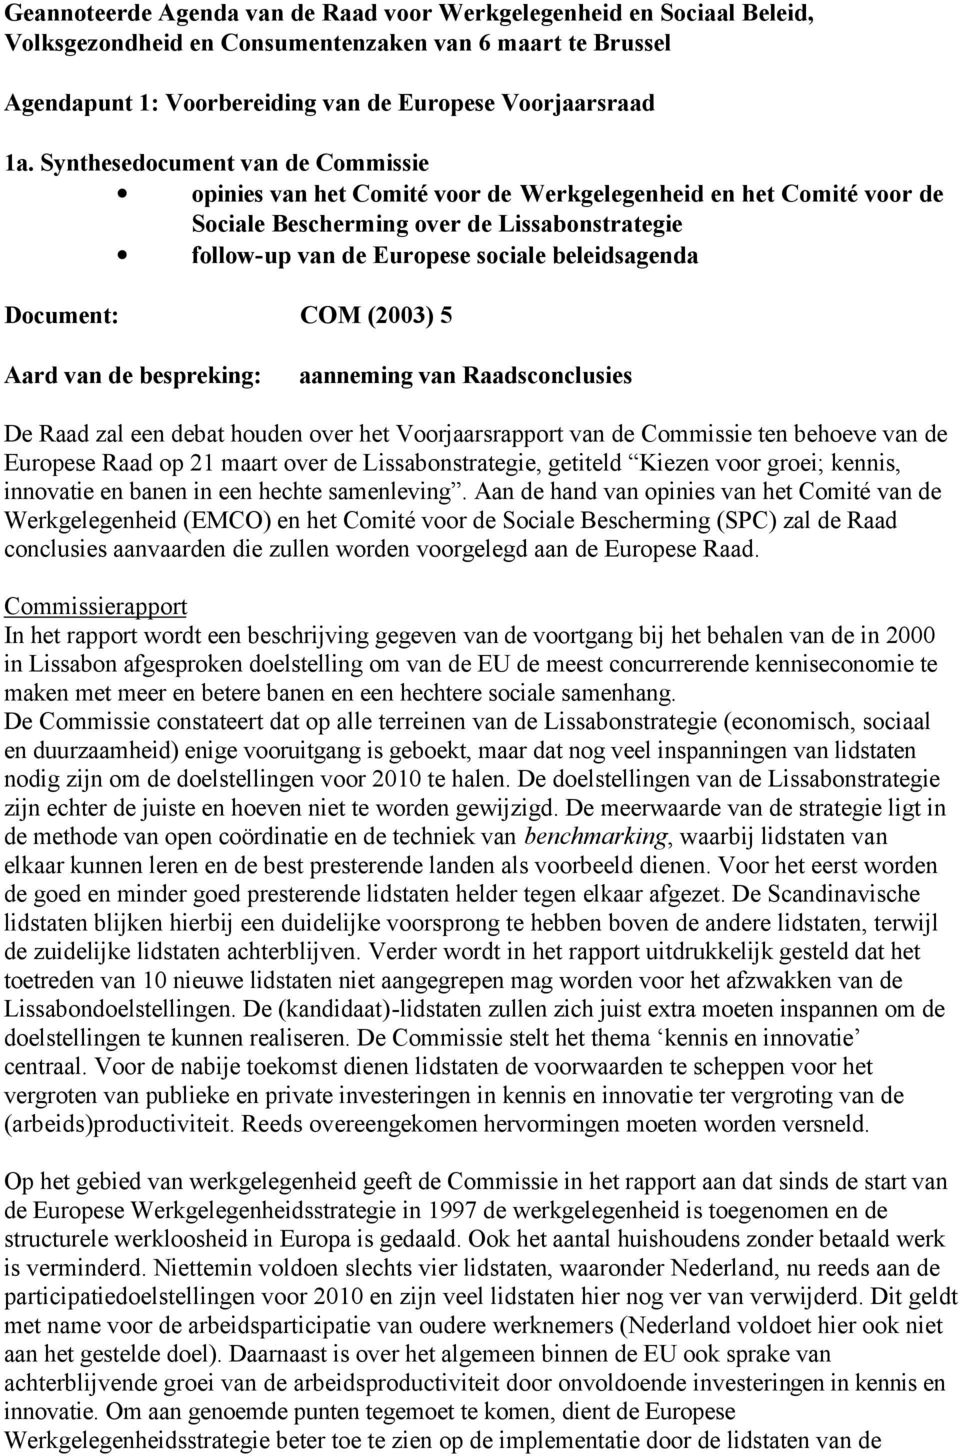 Document: COM (2003) 5 Aard van de bespreking: aanneming van Raadsconclusies De Raad zal een debat houden over het Voorjaarsrapport van de Commissie ten behoeve van de Europese Raad op 21 maart over